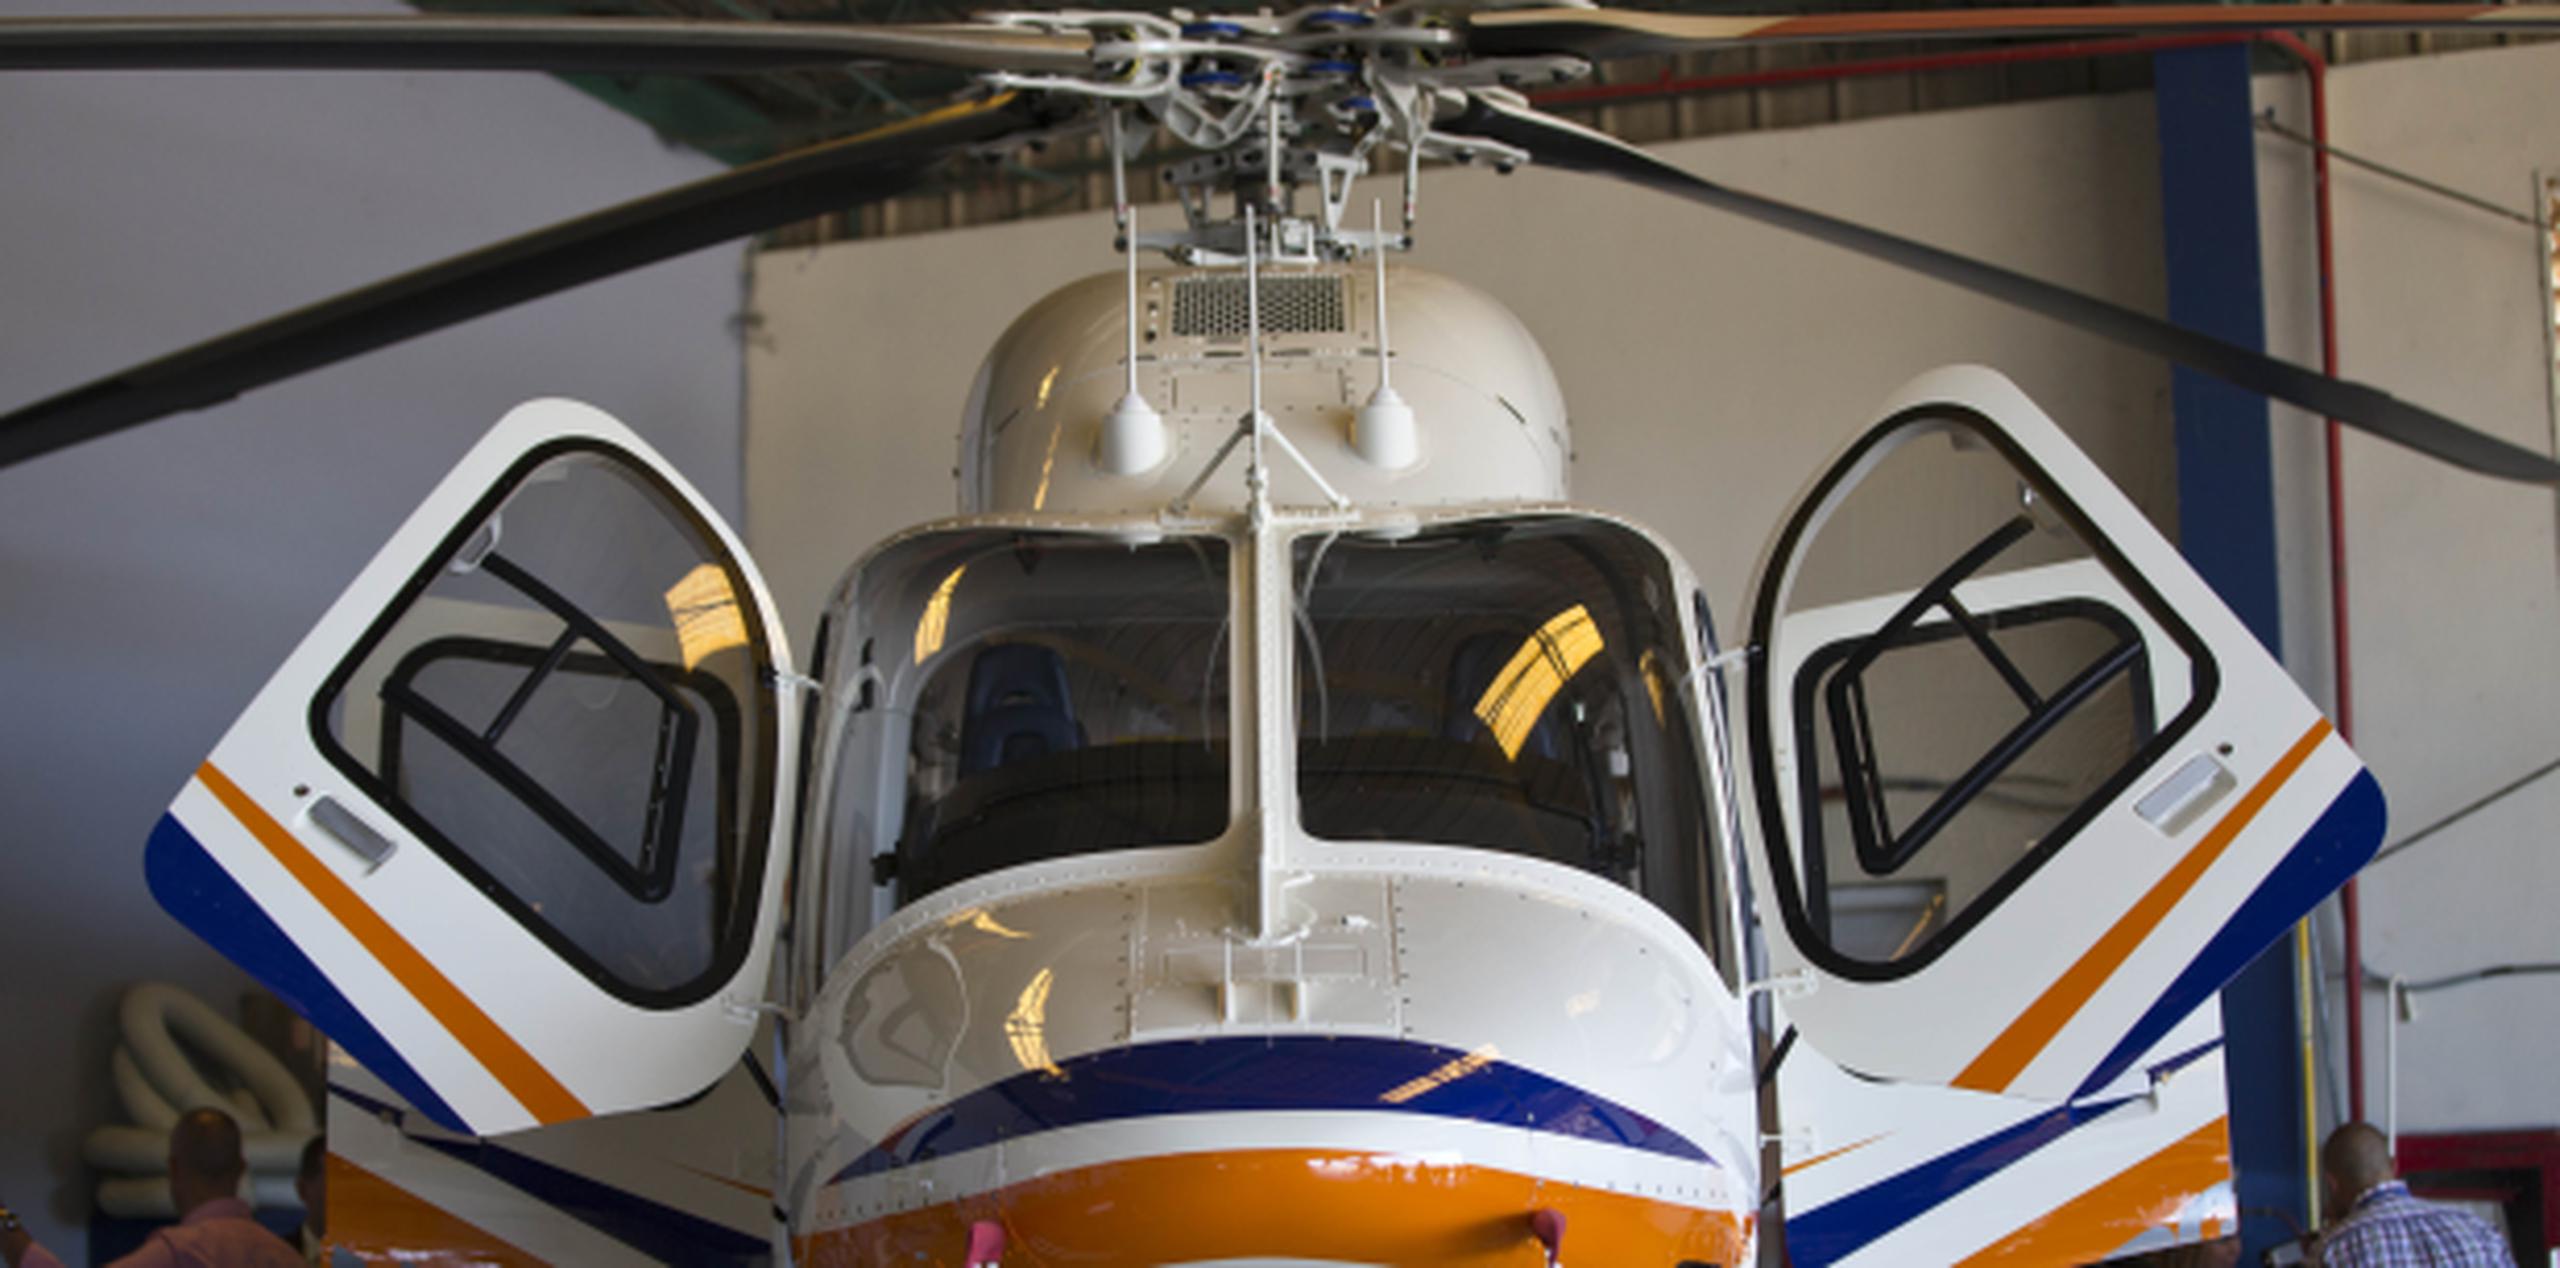 Los gastos estimados en mantenimiento para el helicóptero son de $25,000 mensuales, sin incluir combustible. (Archivo)